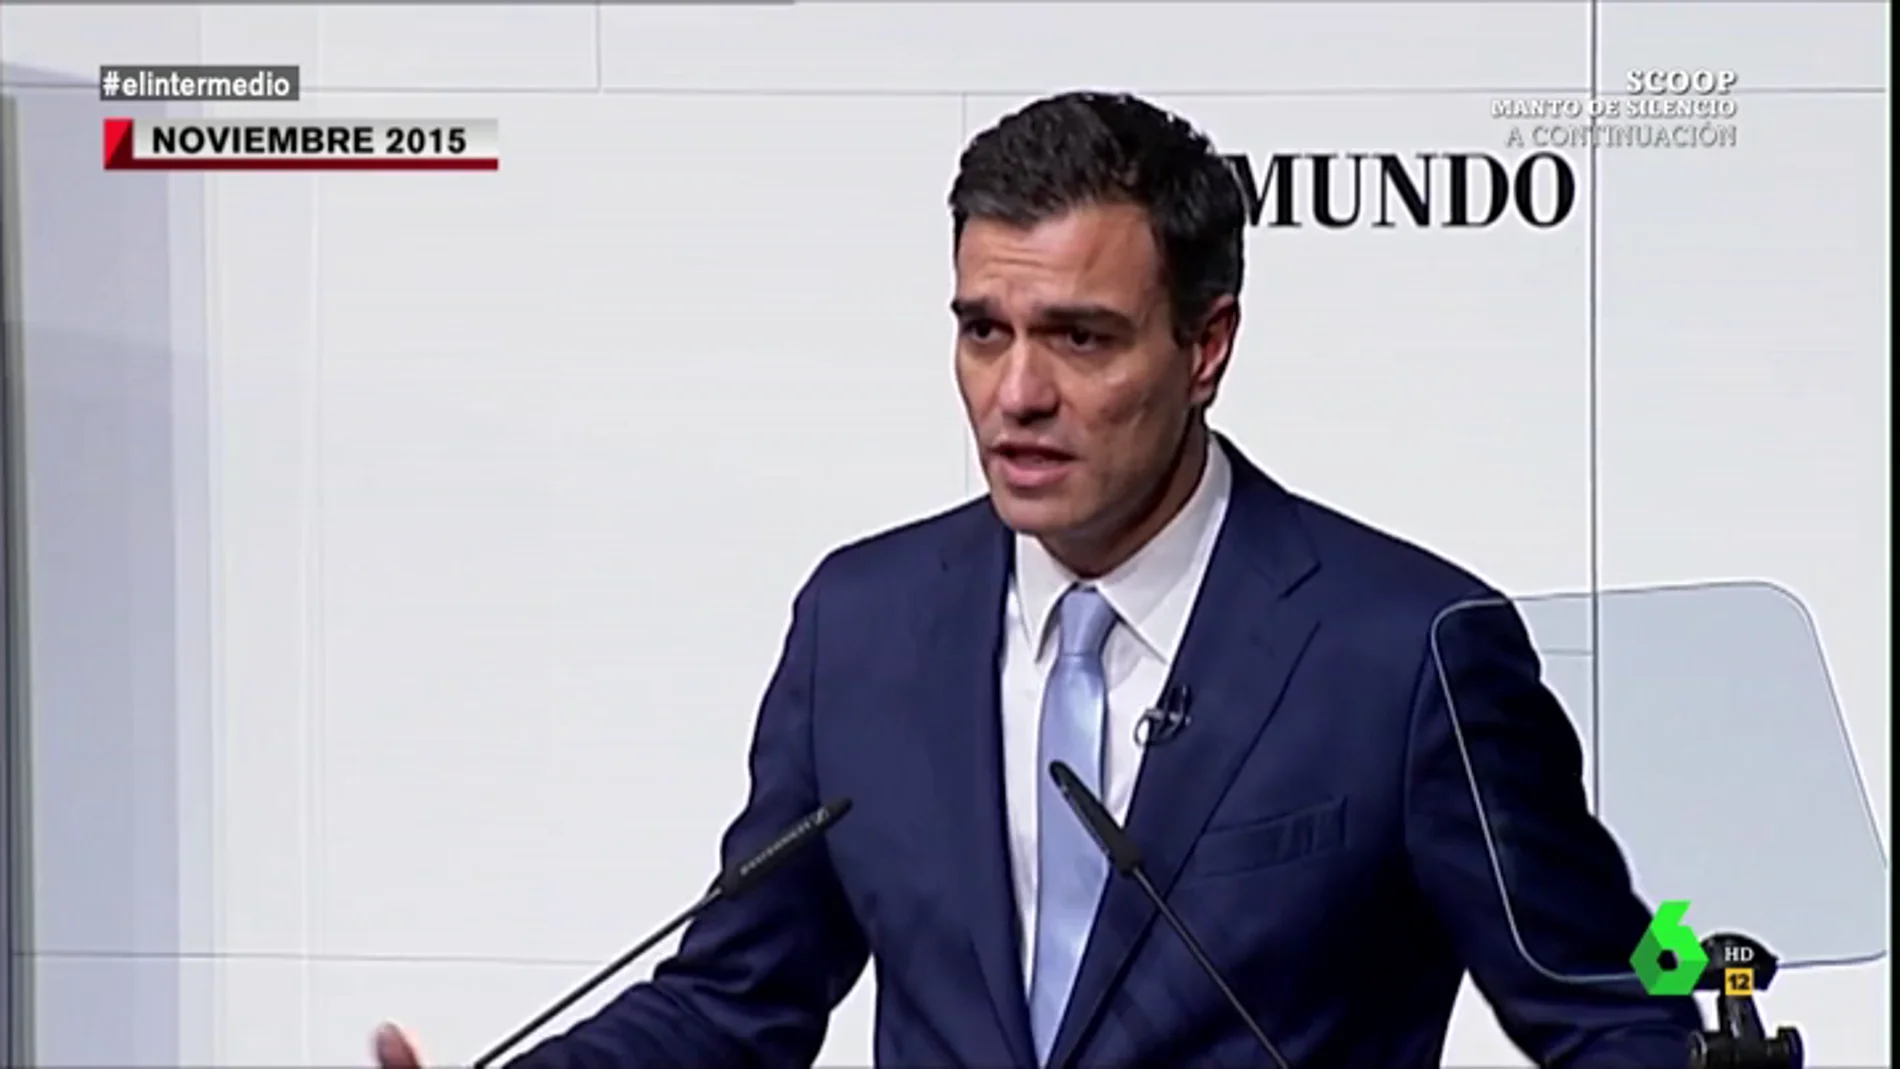 El Intermedio le recuerda a Pedro Sánchez cómo hablaba de los decretos ley: "Antes no le gustaban, ahora los usa hasta en campaña electoral"